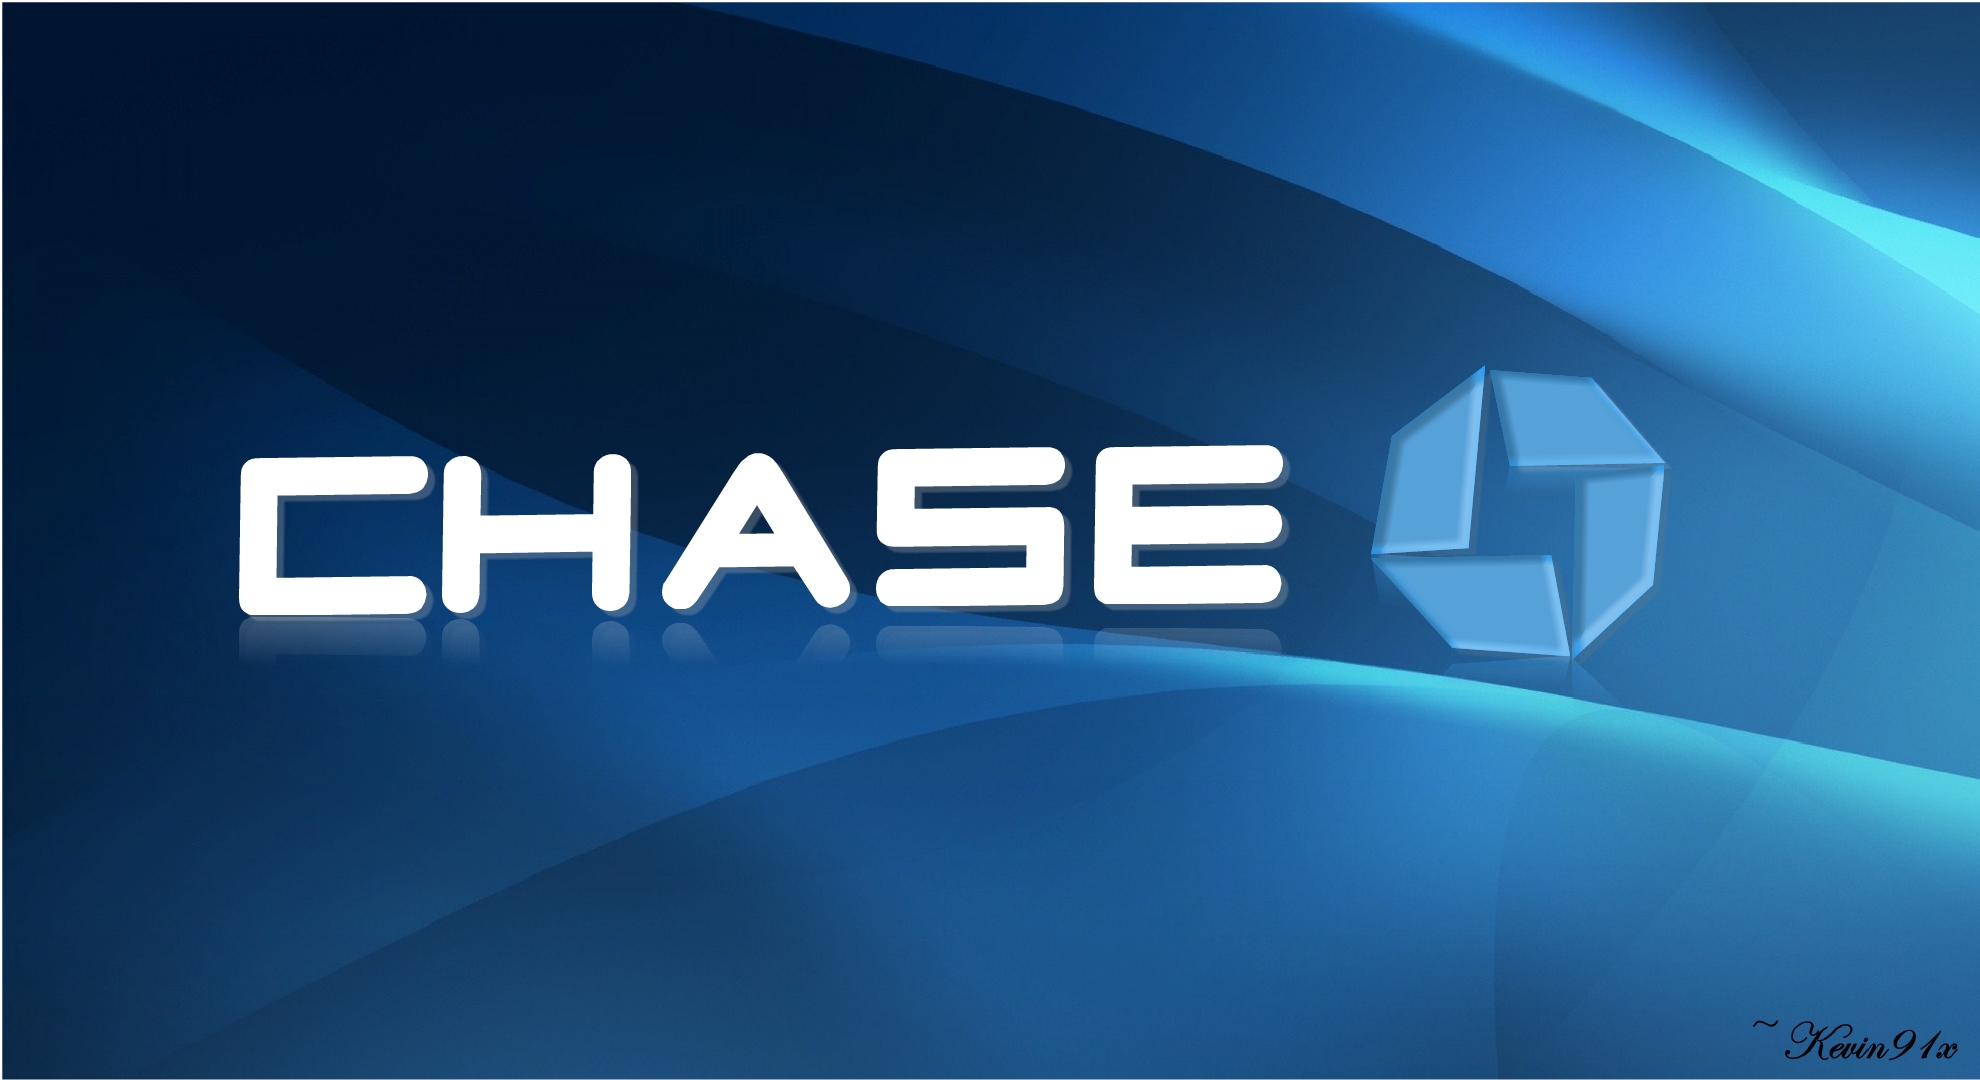 Chase Logo photo - 1